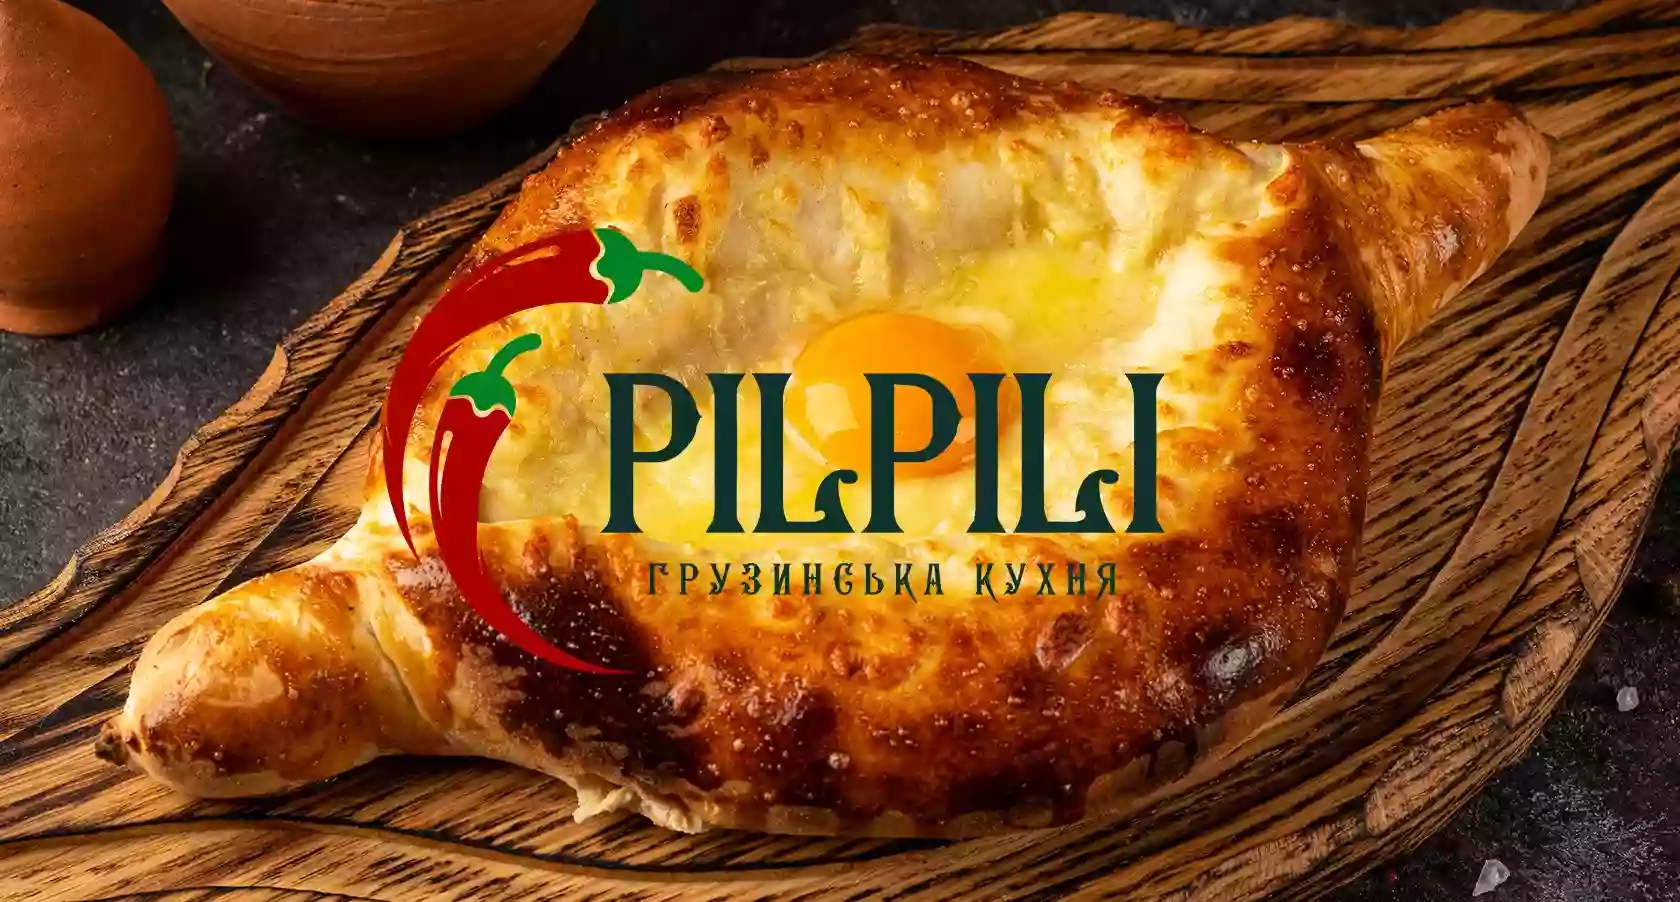 «PilPili» — сімейний ресторан грузинської кухні